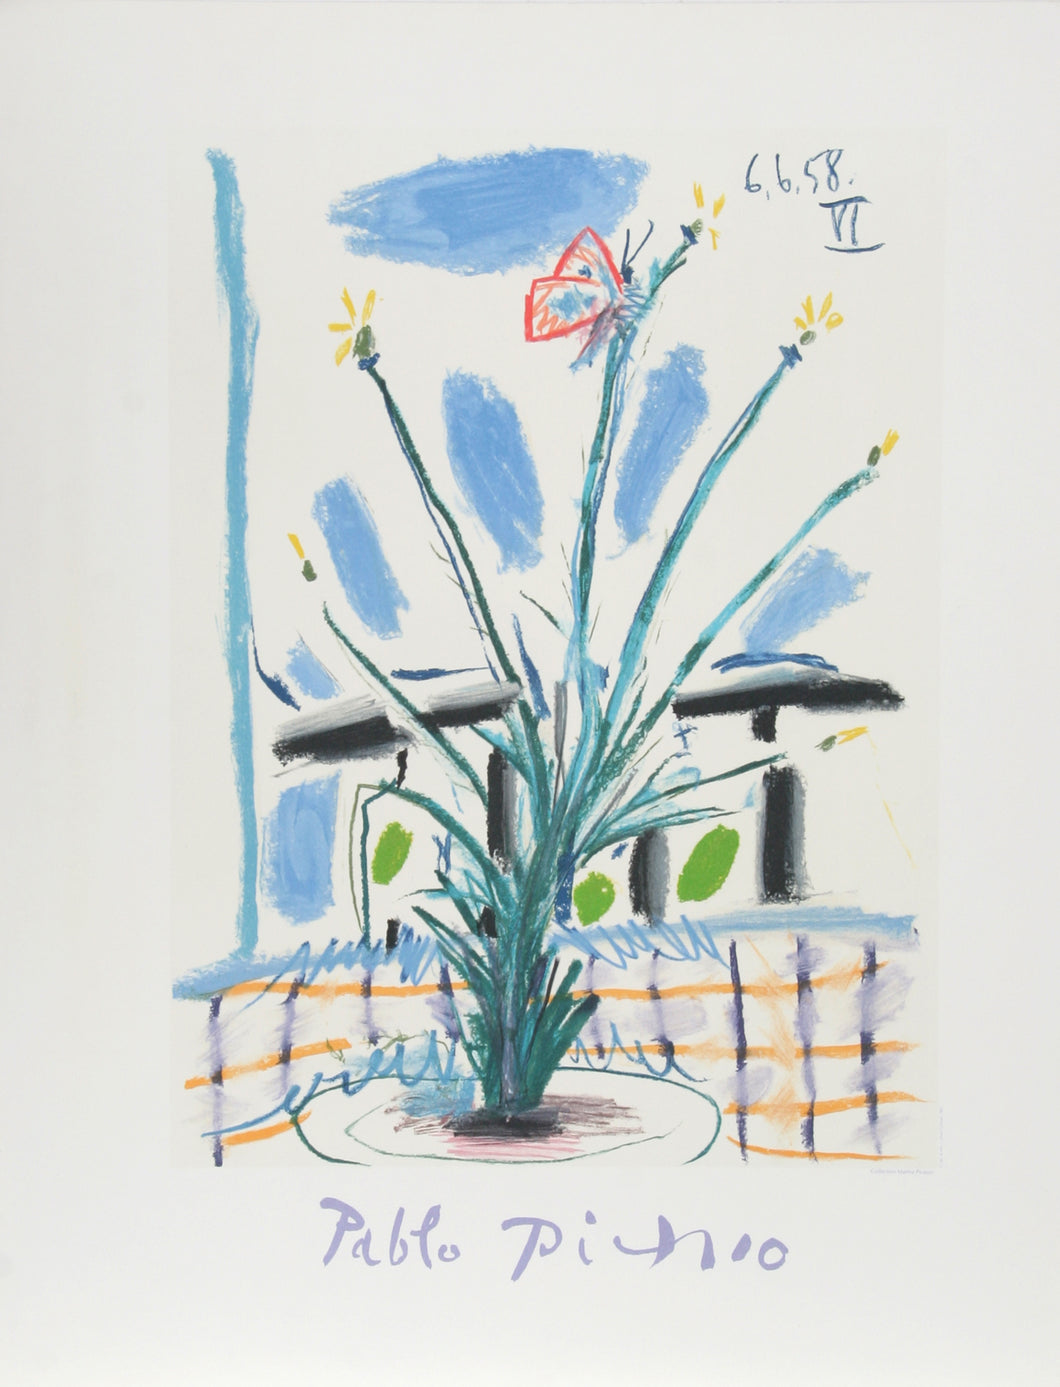 Pablo Picasso, Le Bouquet, 39-6-k, Lithograph